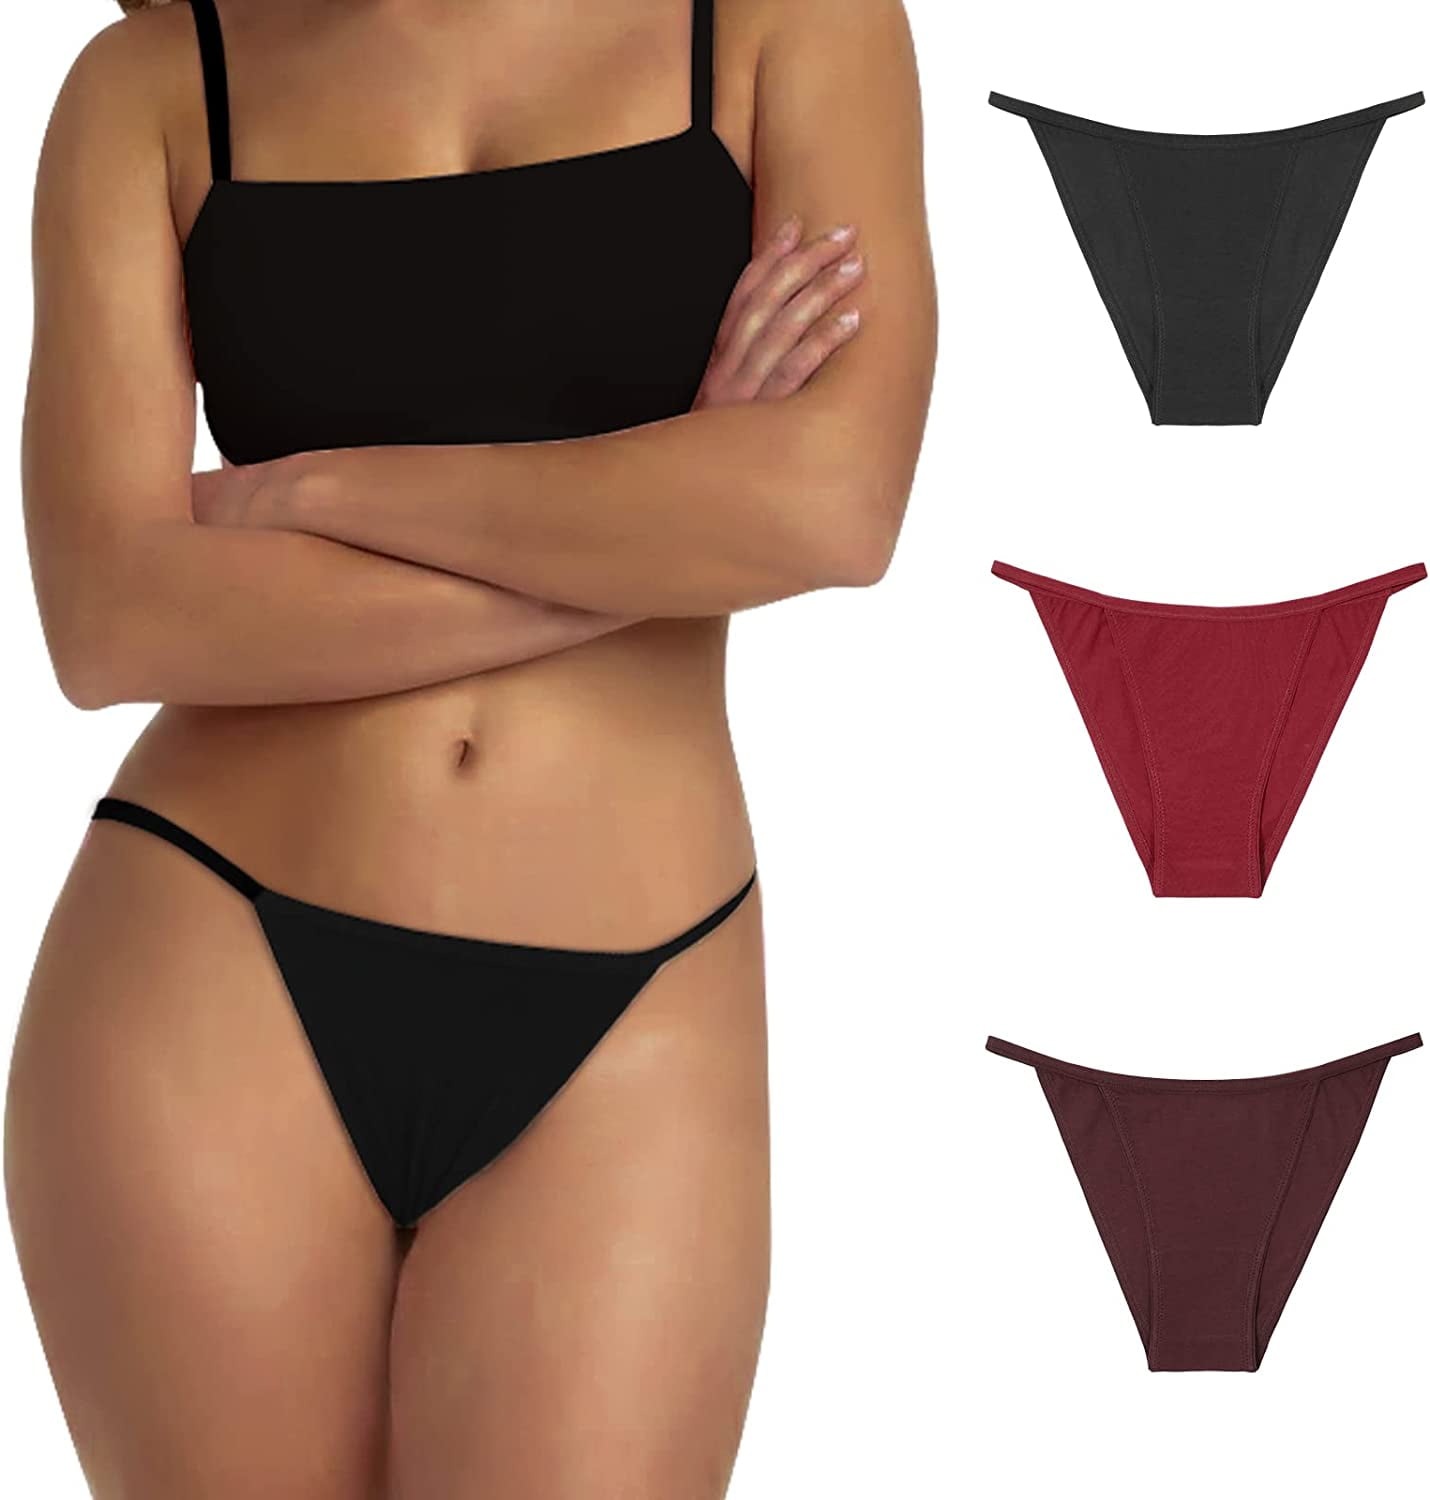 Buy Cotton Bikini Panty Plus Size online